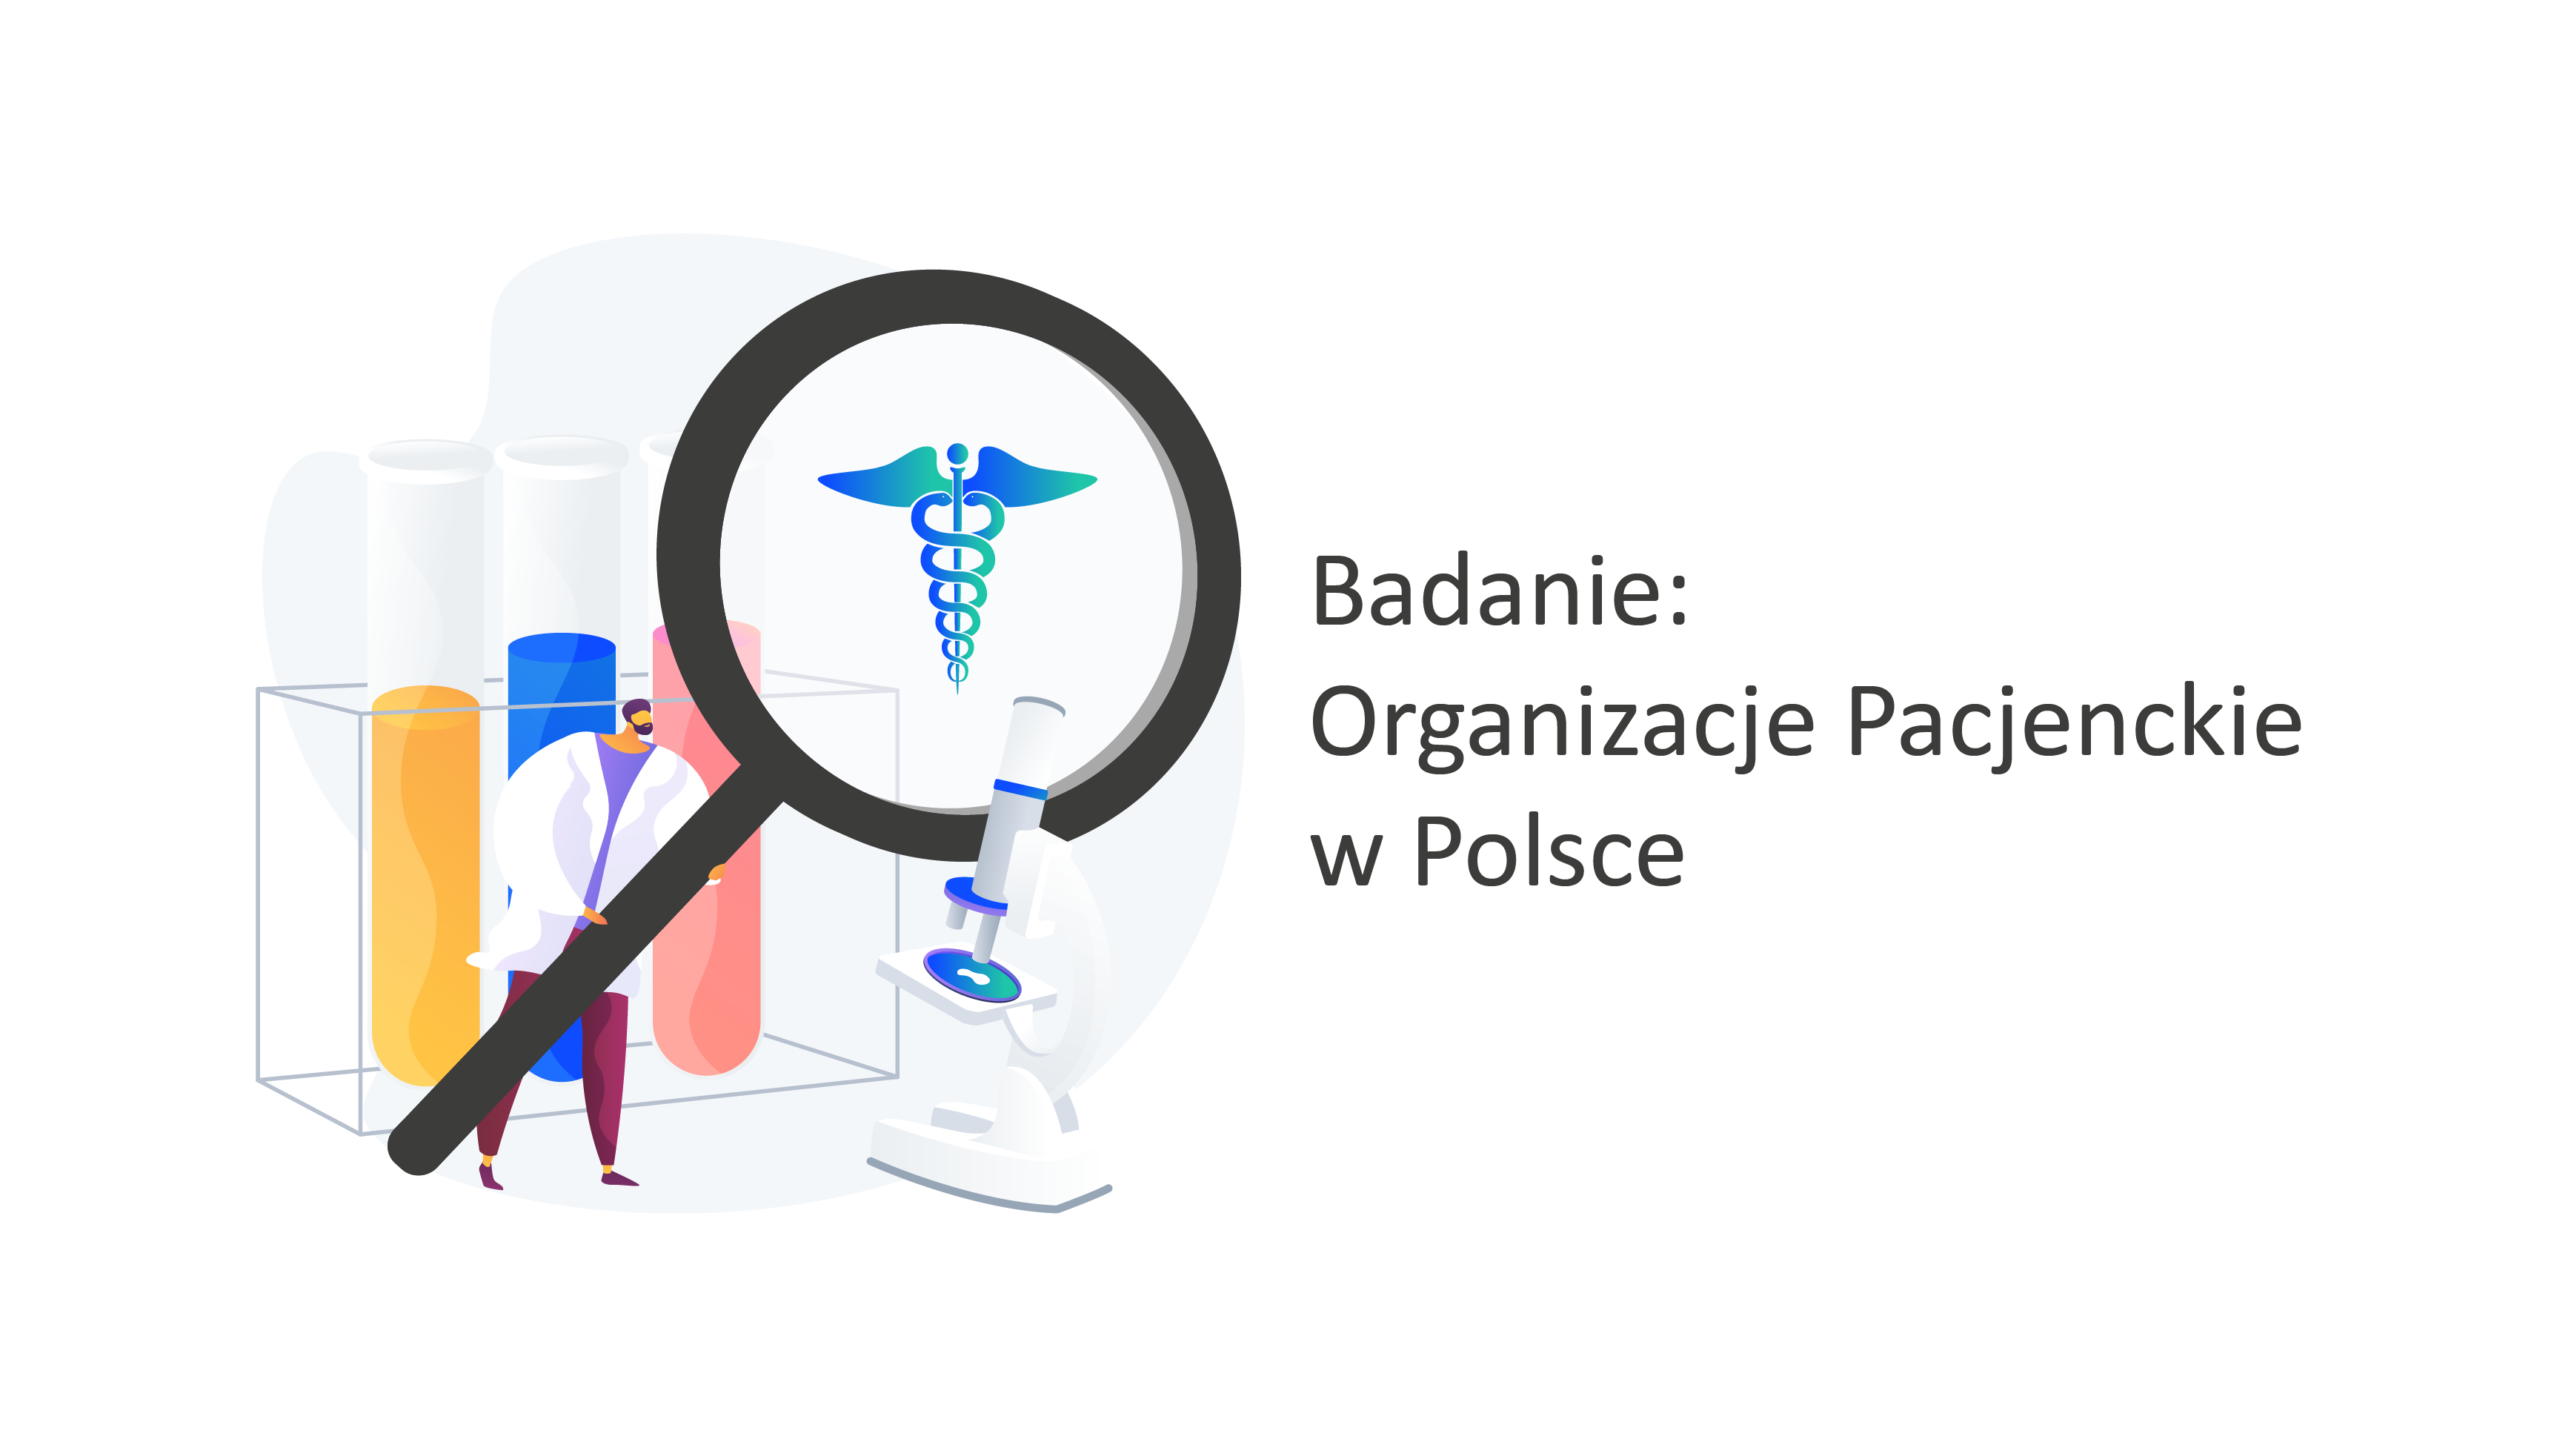 Badanie organizacje pacjenckie w Polsce